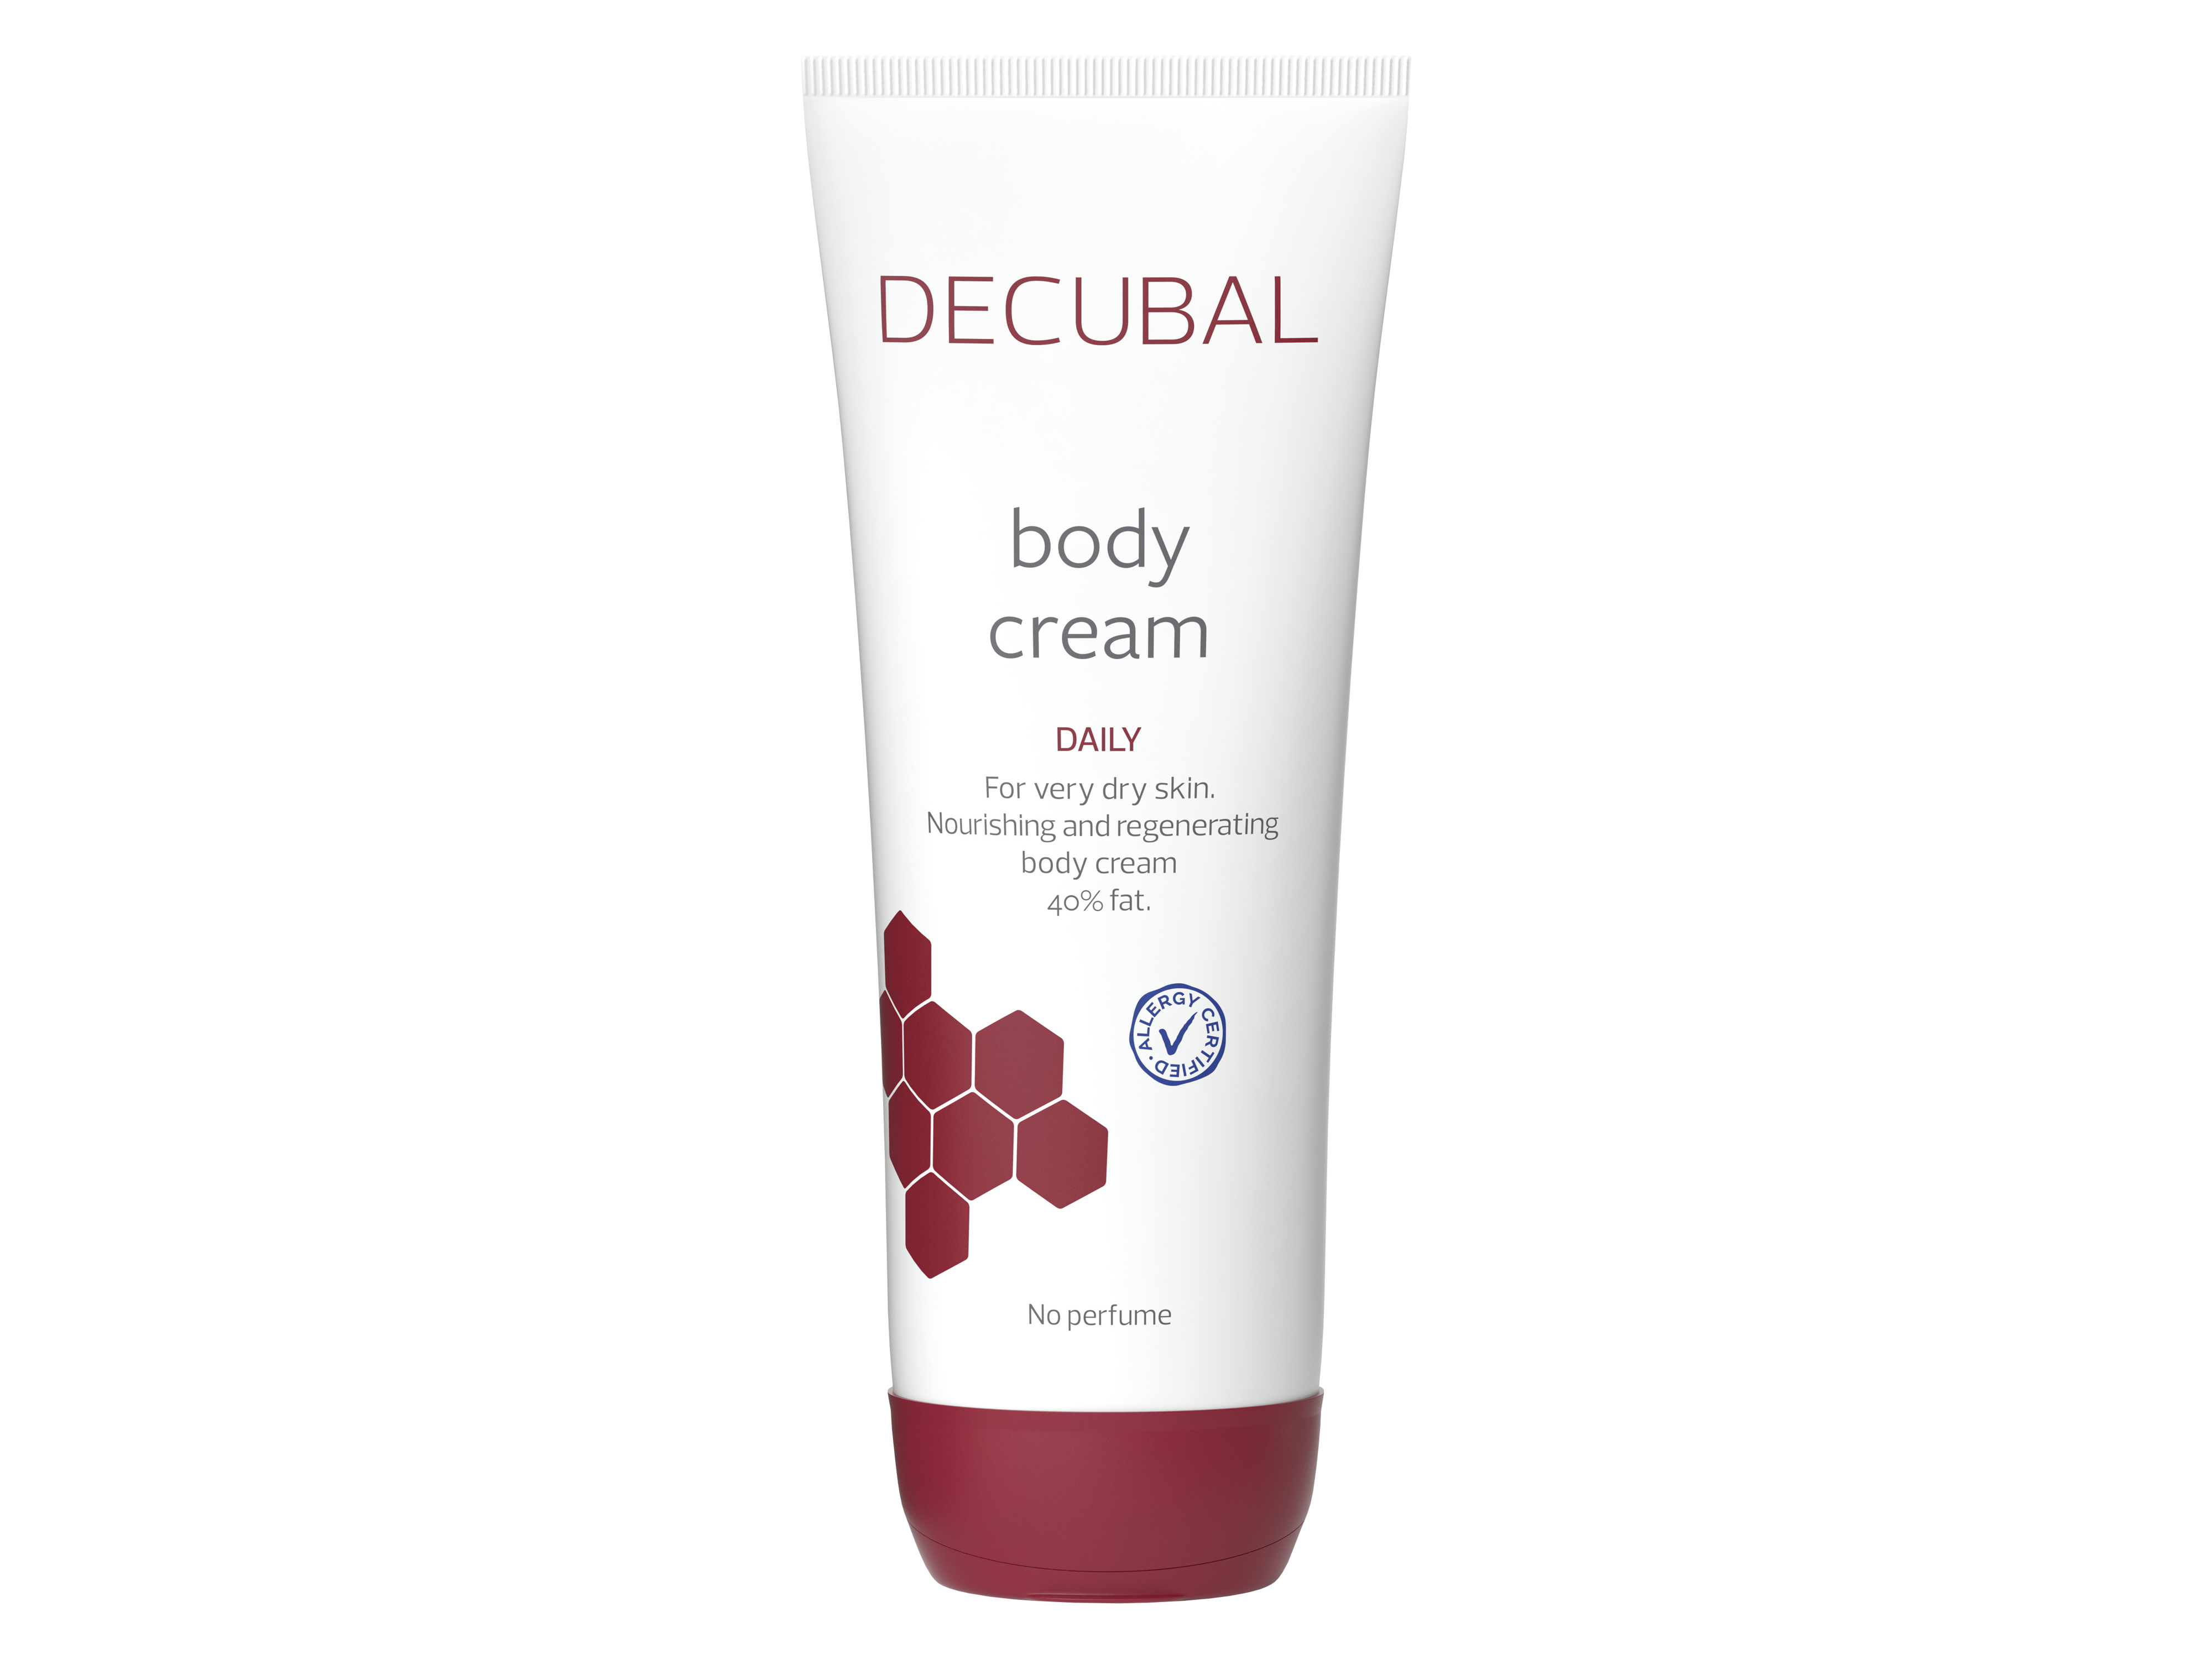 Decubal Body Cream, 250 g